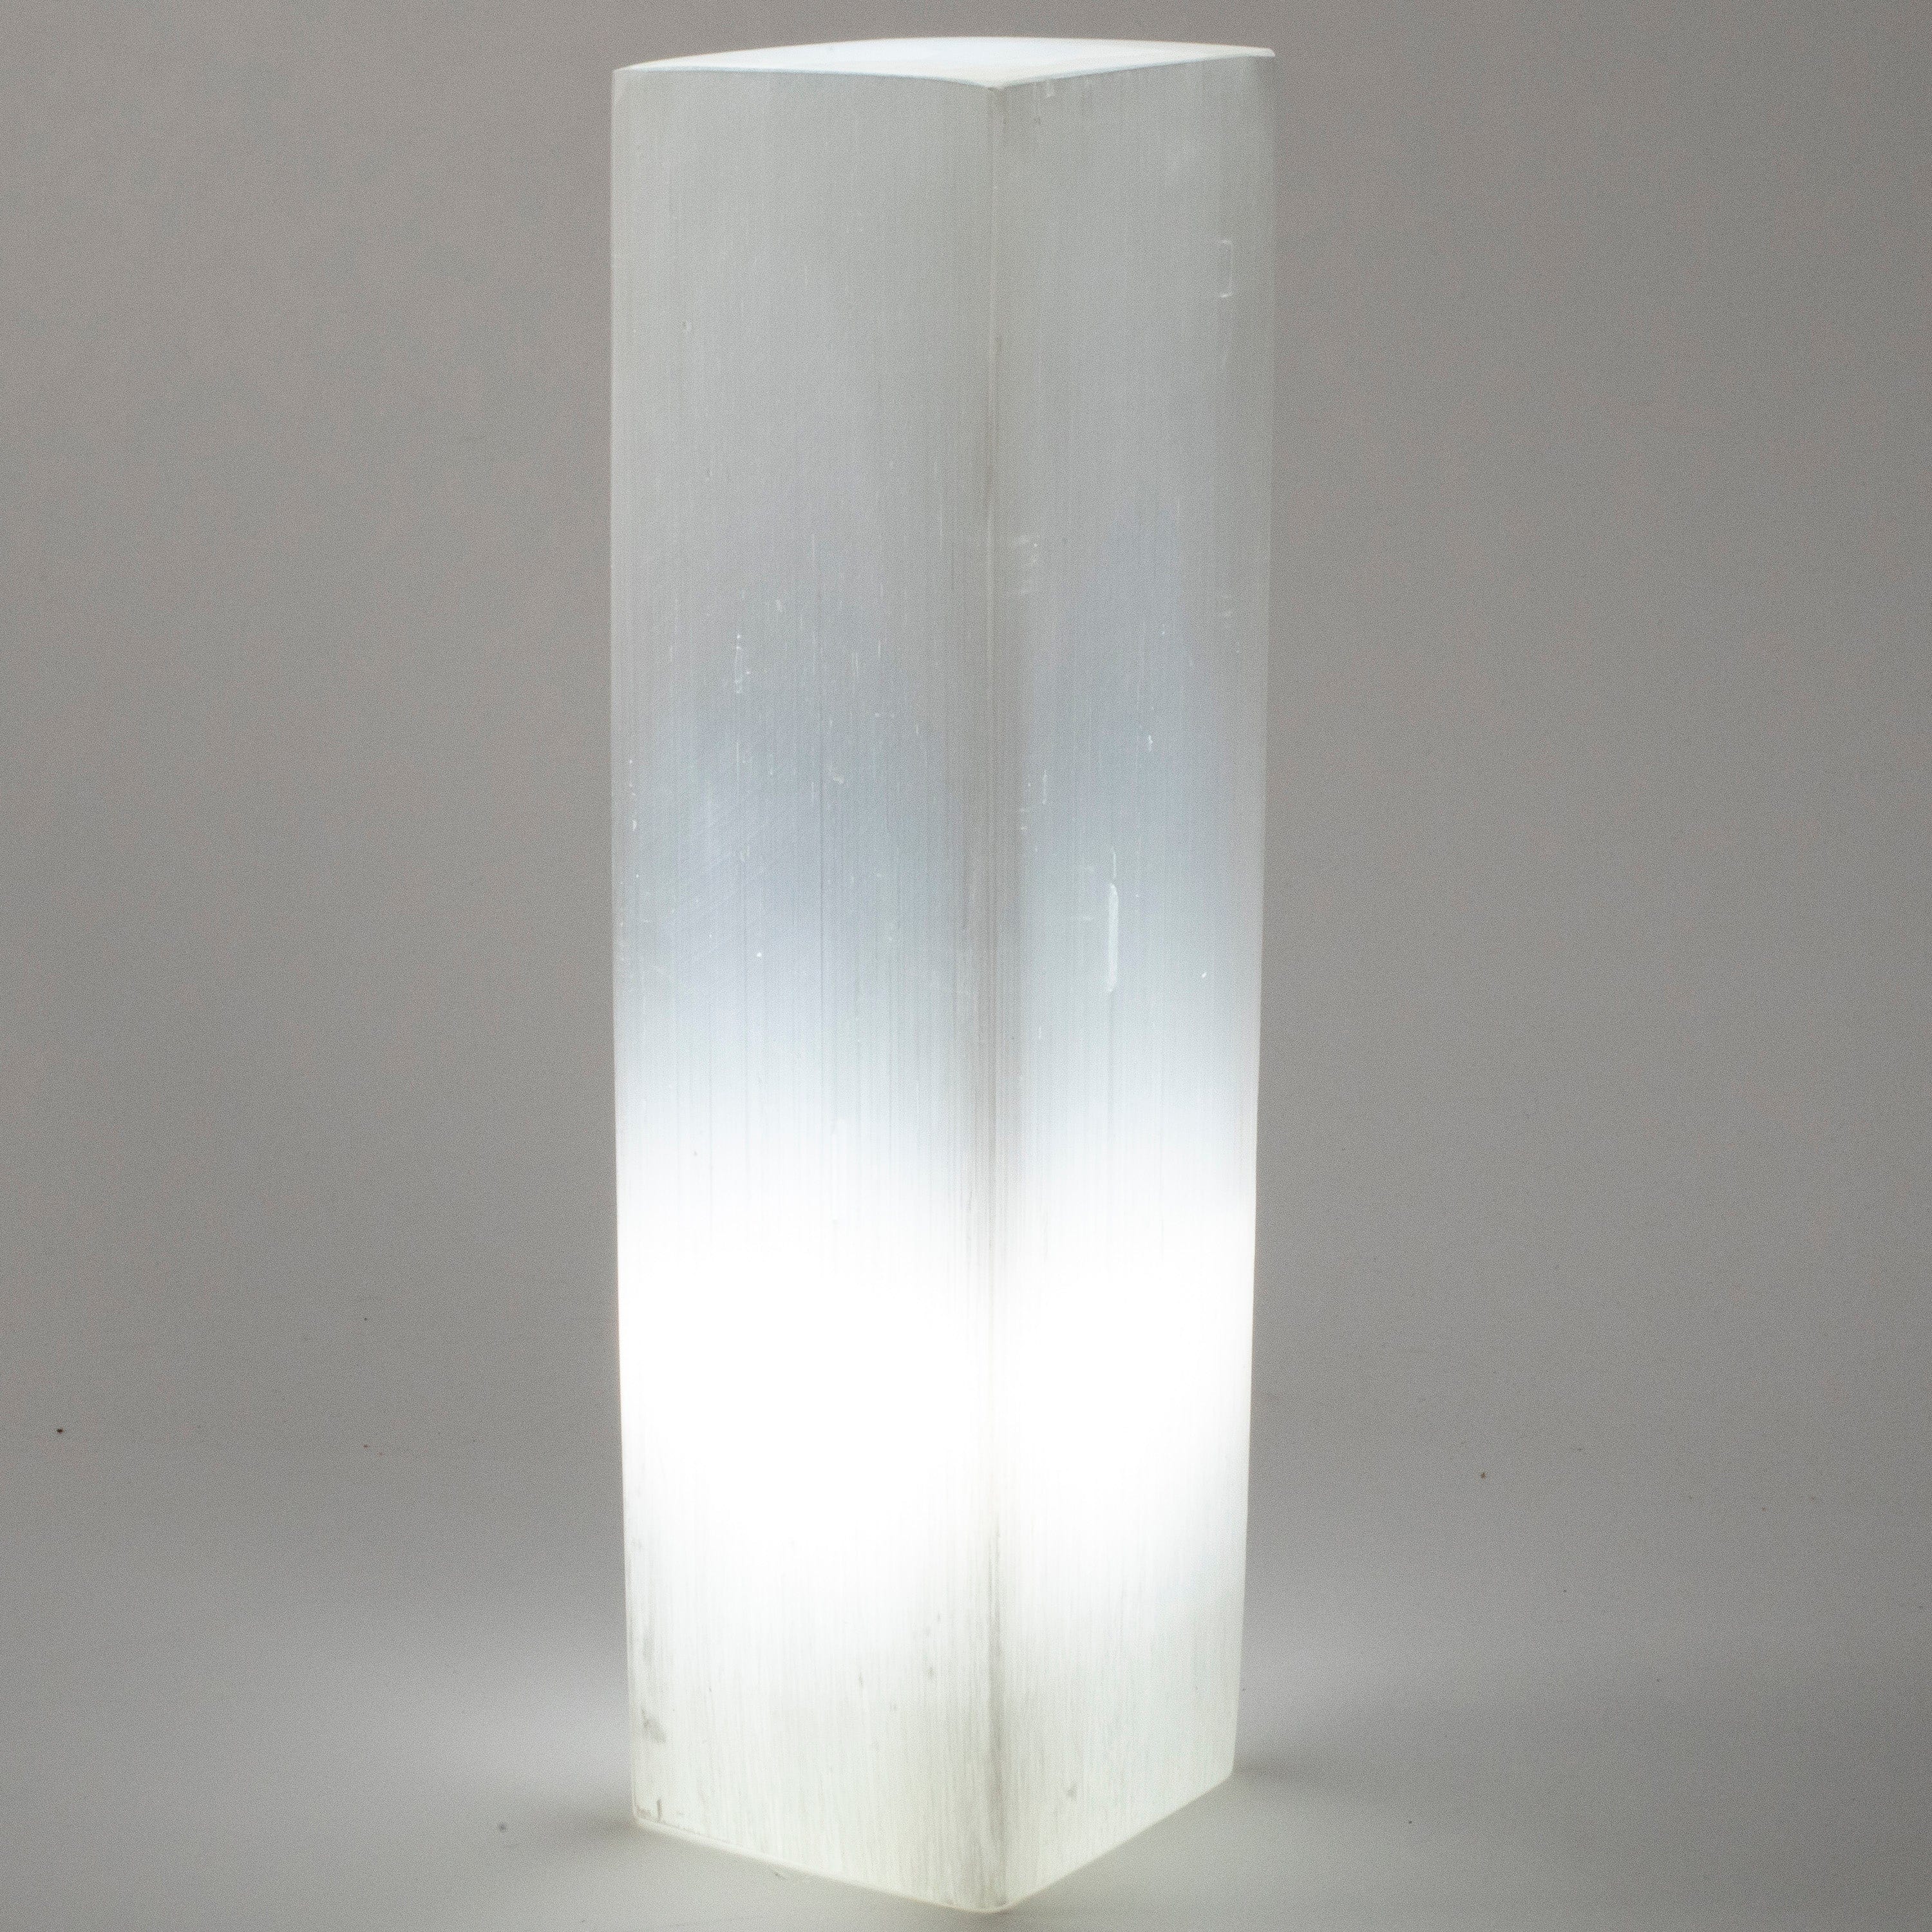 Kalifano Selenite Square Selenite Lamp from Morocco - 12" SL500-30